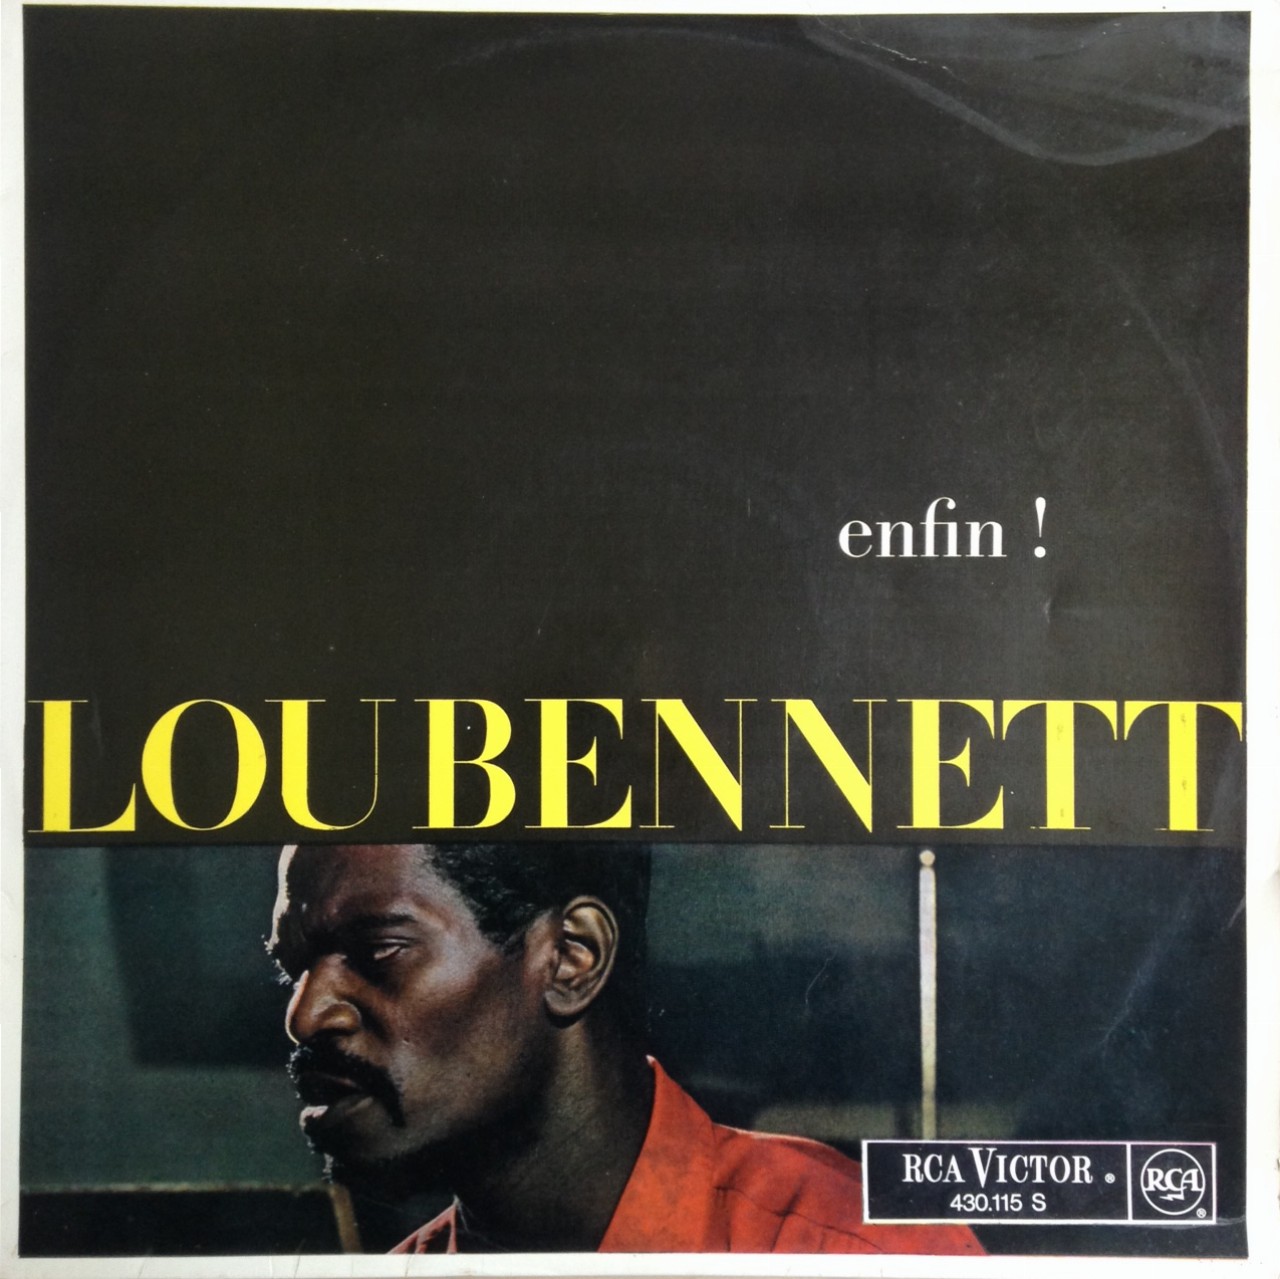 Lou Bennett - Enfin!